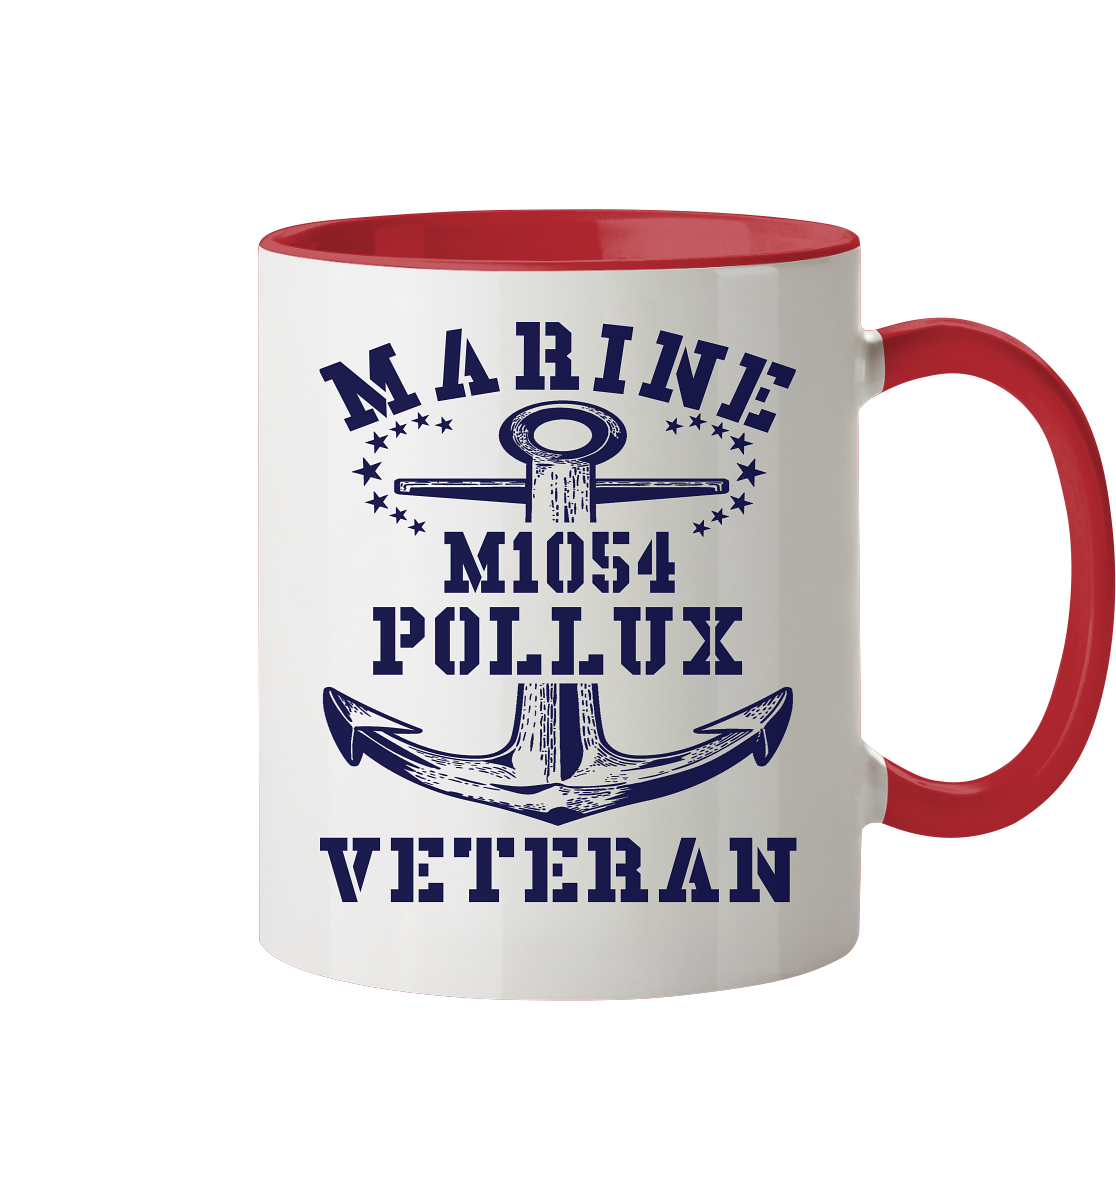 SM-Boot M1054 POLLUX Marine Veteran - Tasse zweifarbig